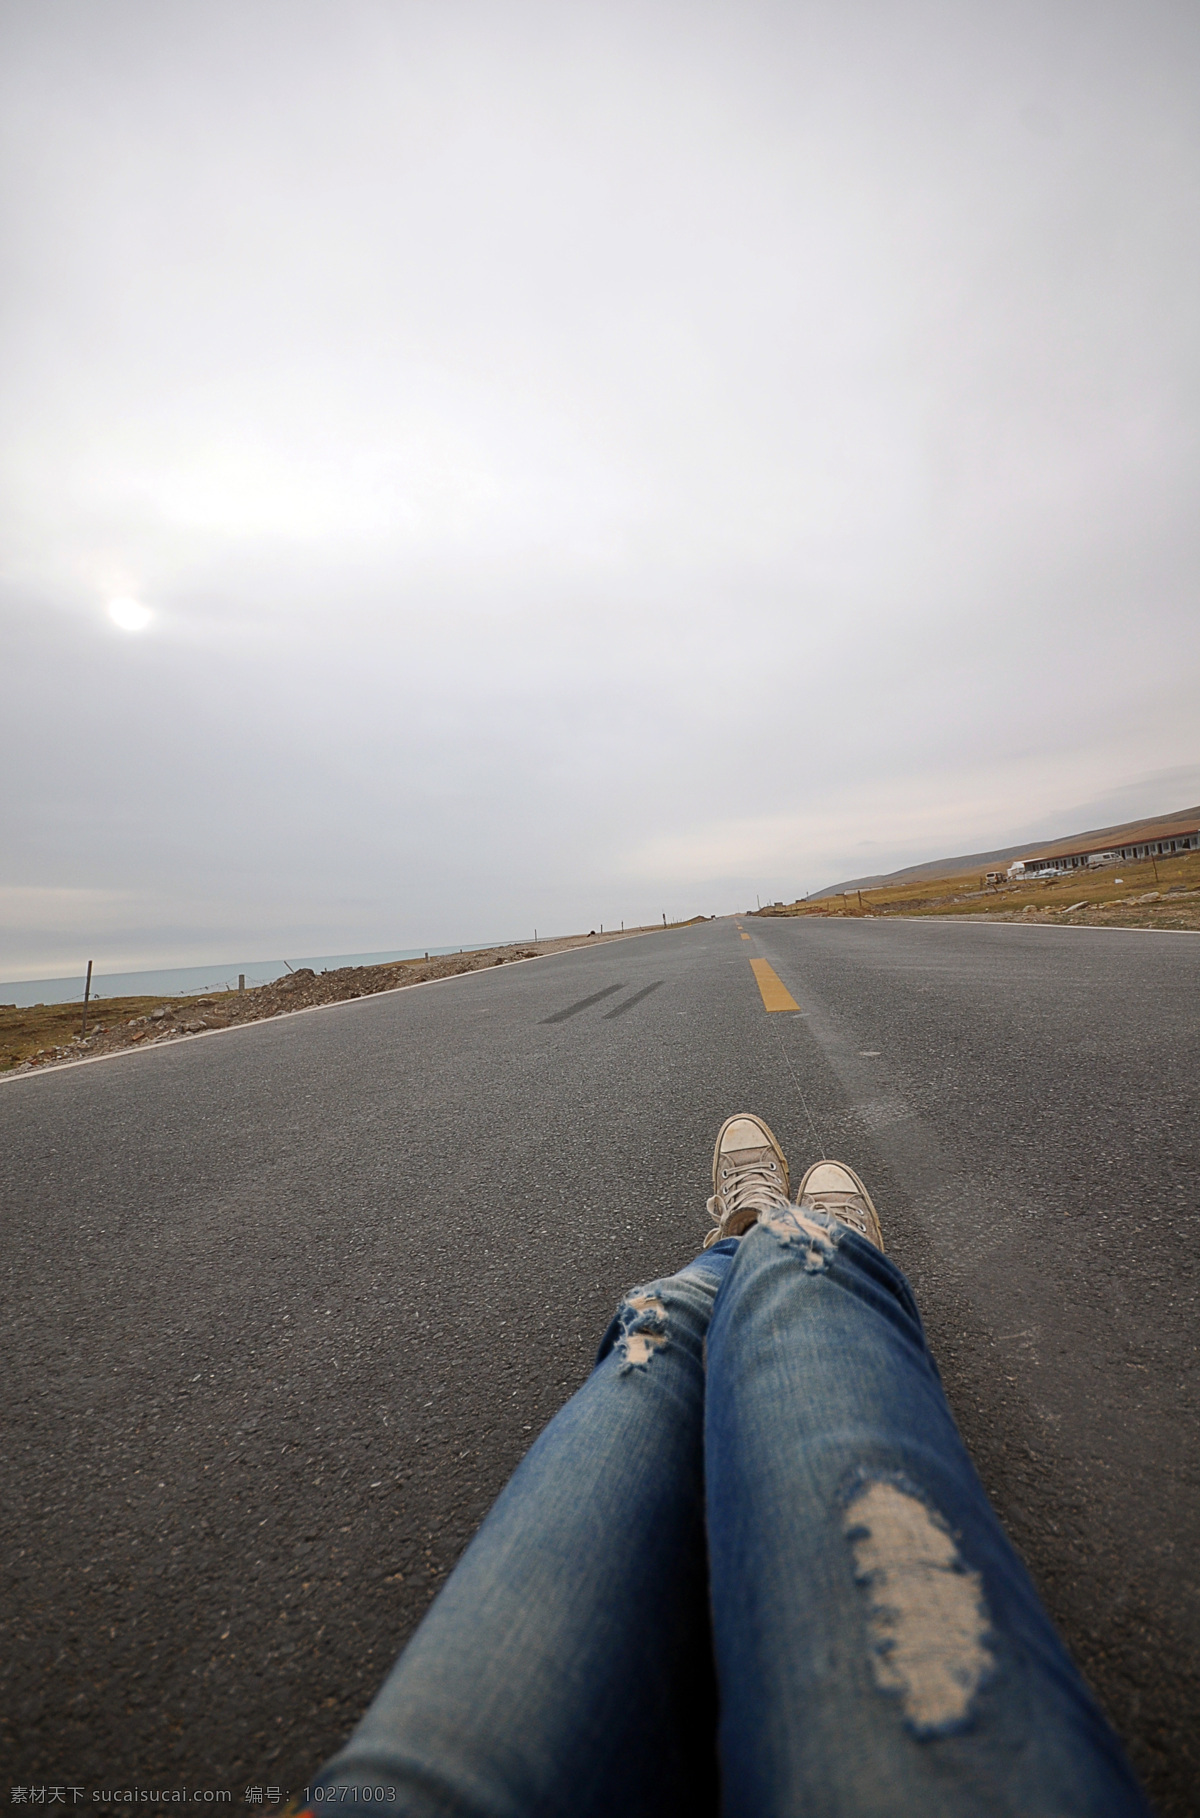 牛仔 裤长 腿 躺 公路 上 牛仔裤 长腿 躺在 公路上 牛仔裤长腿 躺在公路上 青藏 川藏 摄影作品 旅游摄影 国内旅游